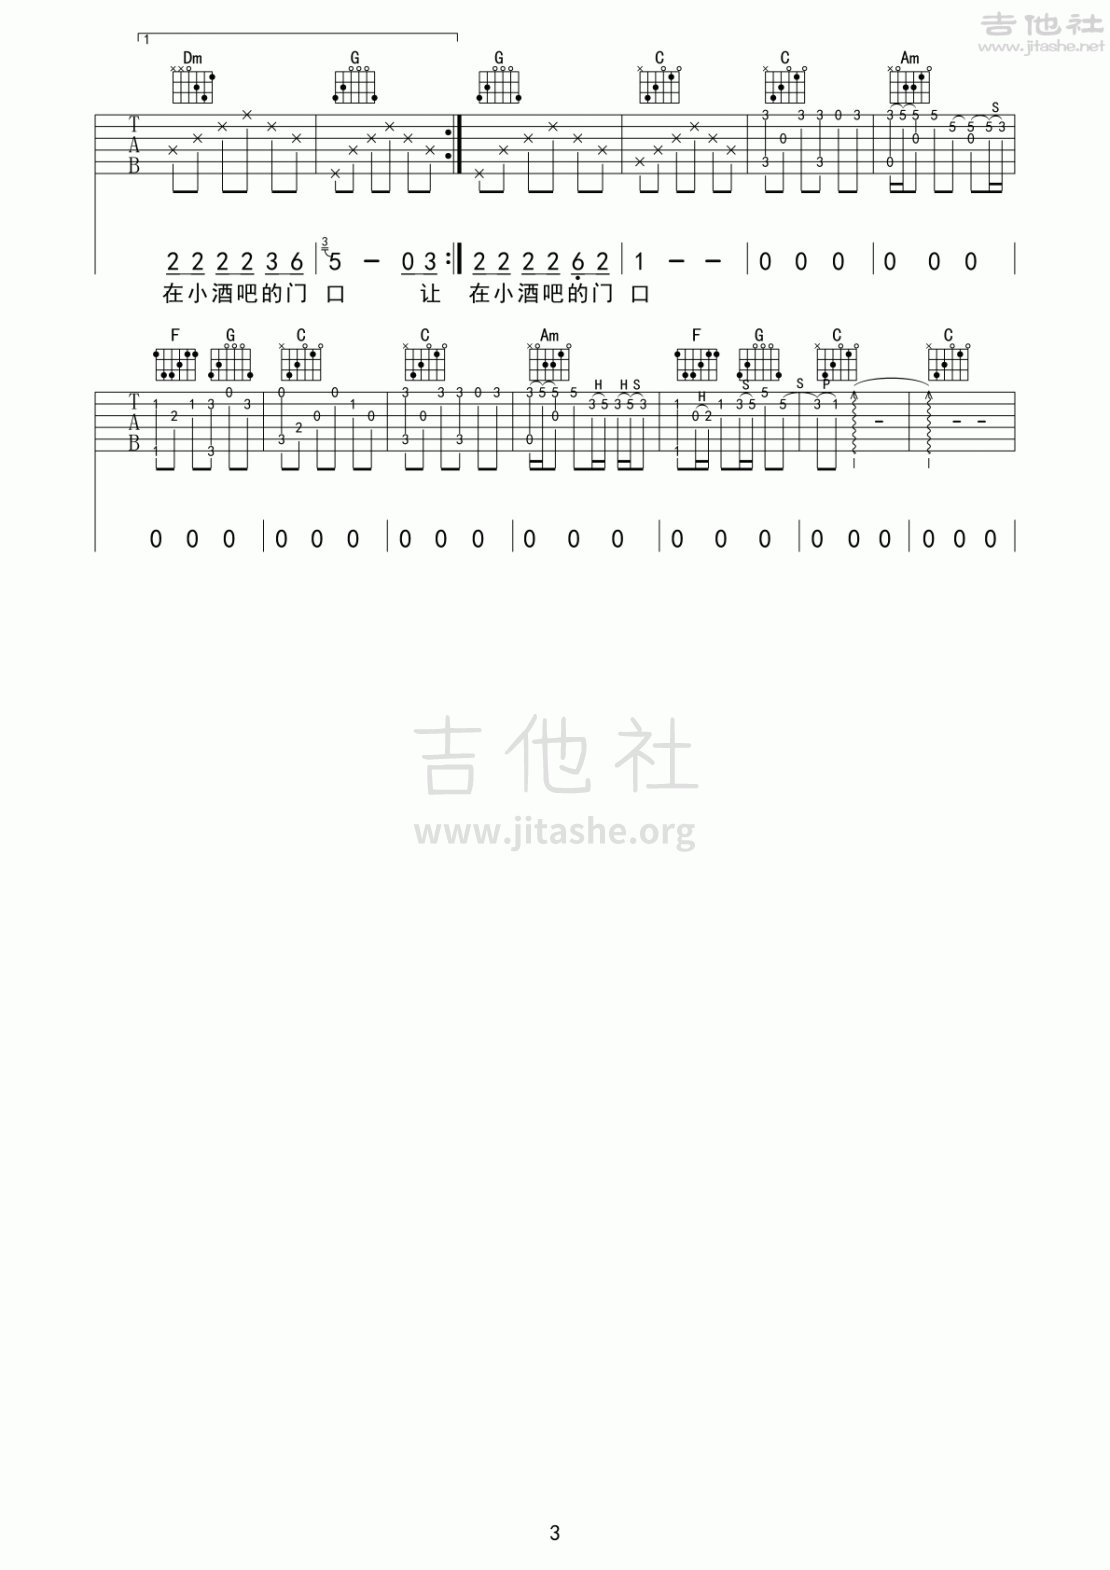 打印:写给成都的歌(成都故事)吉他谱_赵雷(雷子)_写给成都的歌 成都故事 赵雷 完整修订版 吉他六线谱图谱_3.gif